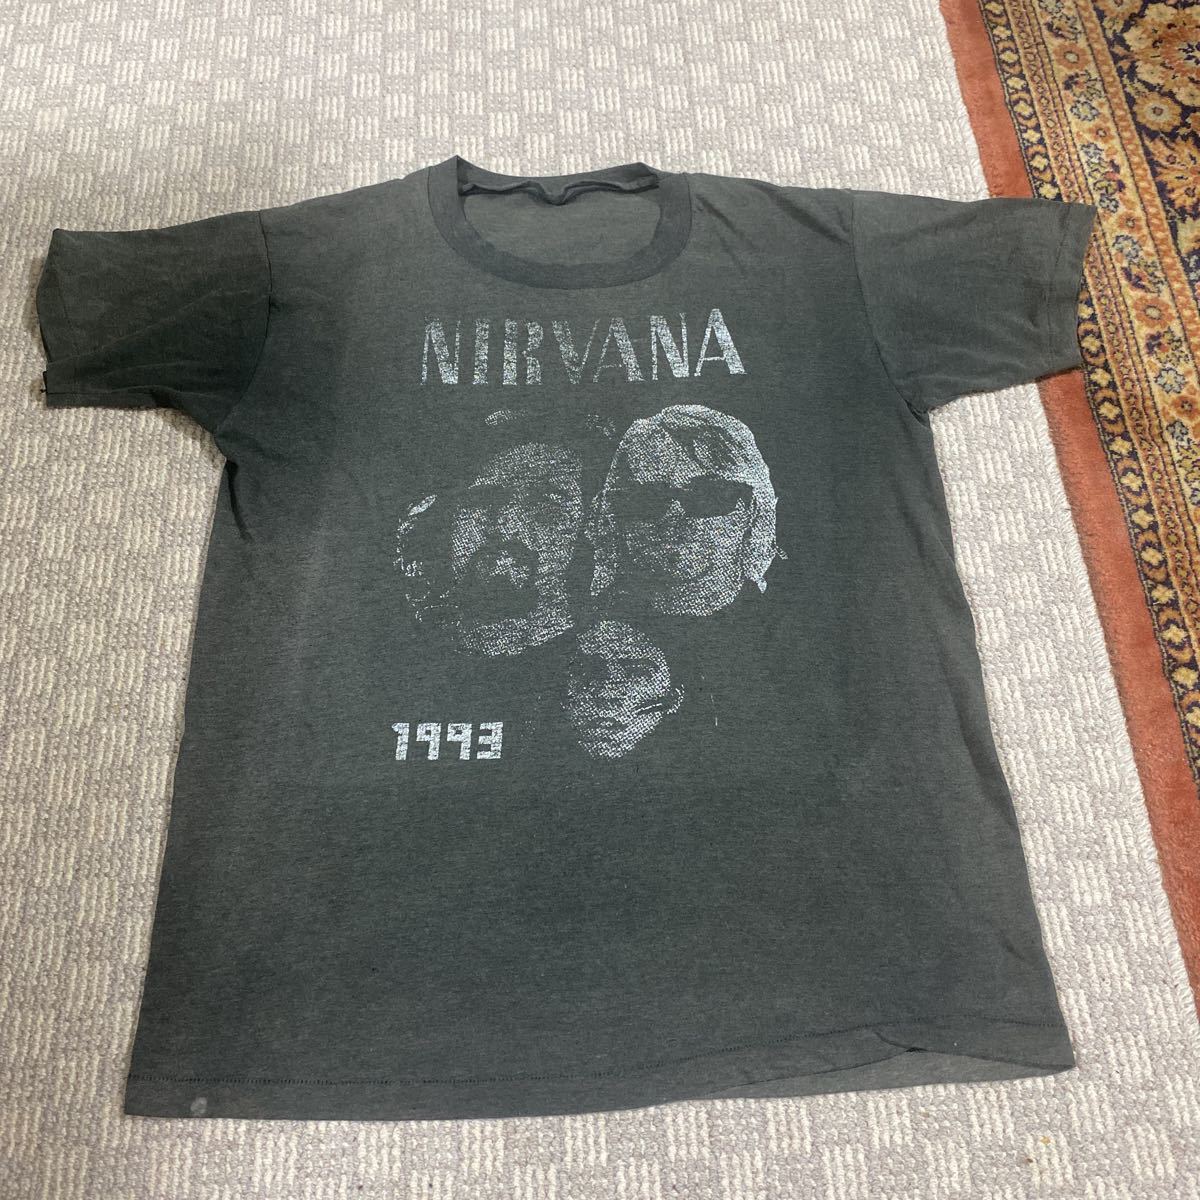 レア バックプリントあり 1993年 Nirvana ツアー Tシャツ ニルヴァーナ